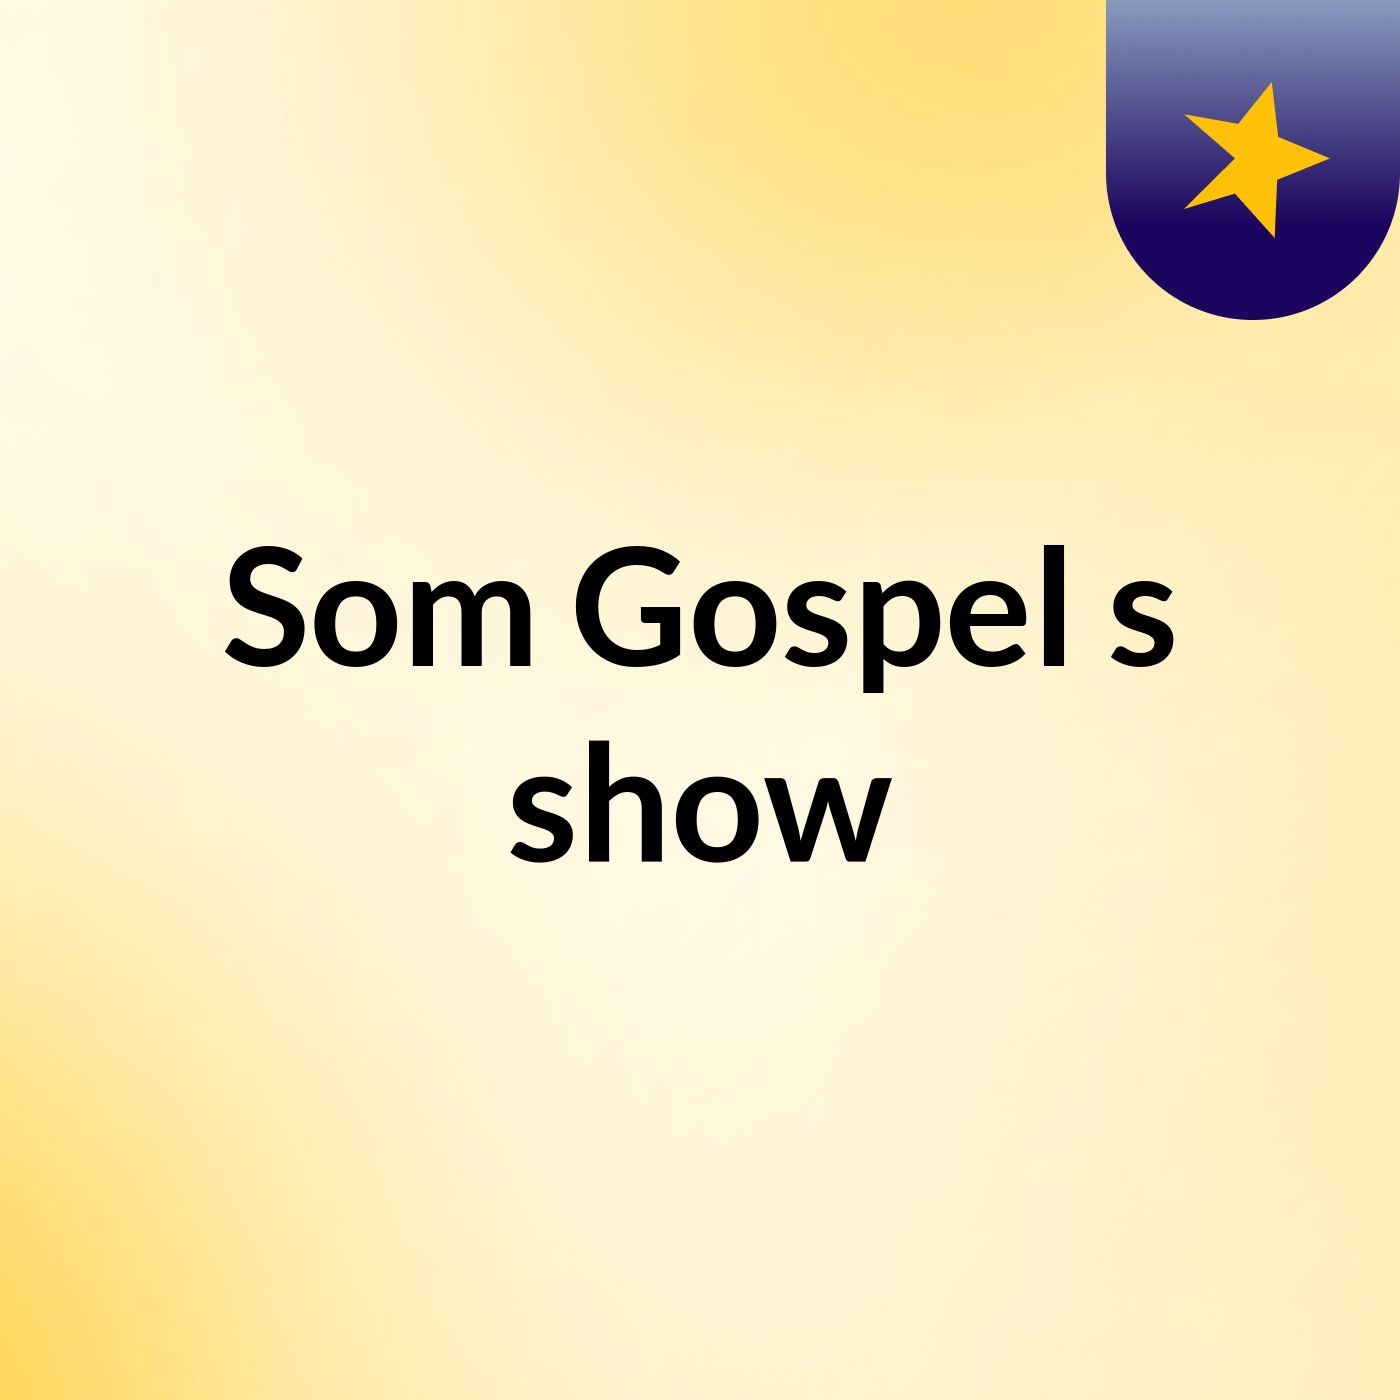 Som Gospel's show